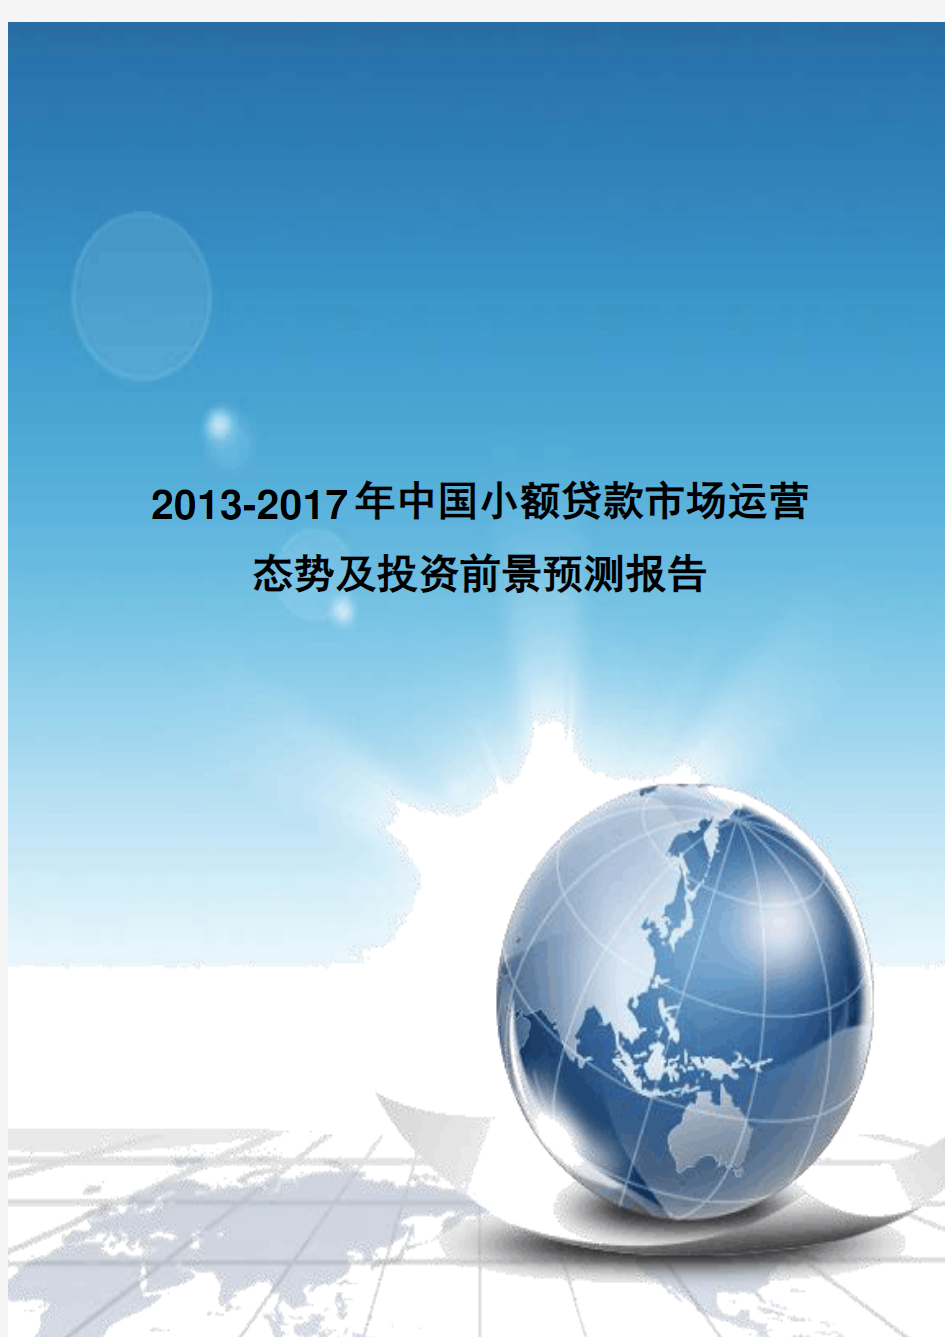 《2013-2017年中国小额贷款市场运营态势及投资前景预测报告》